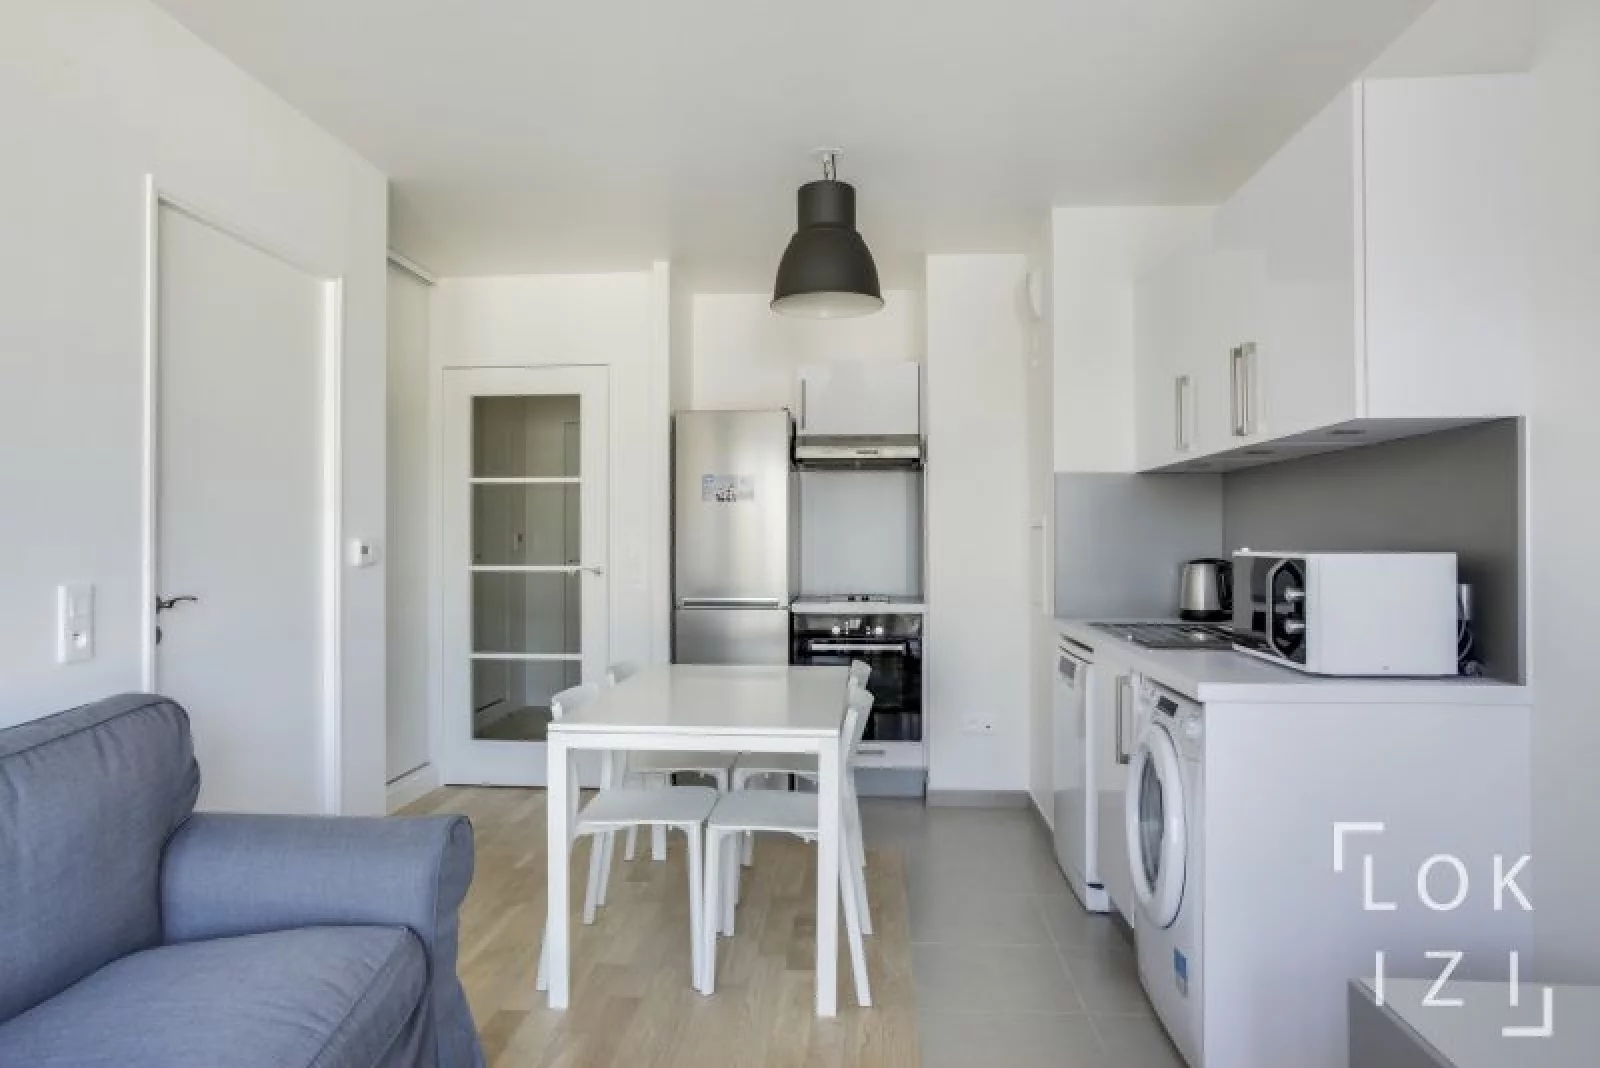 Location appartement meublé 2 pièces 38m²  (Paris sud - le Plessis Robinson)